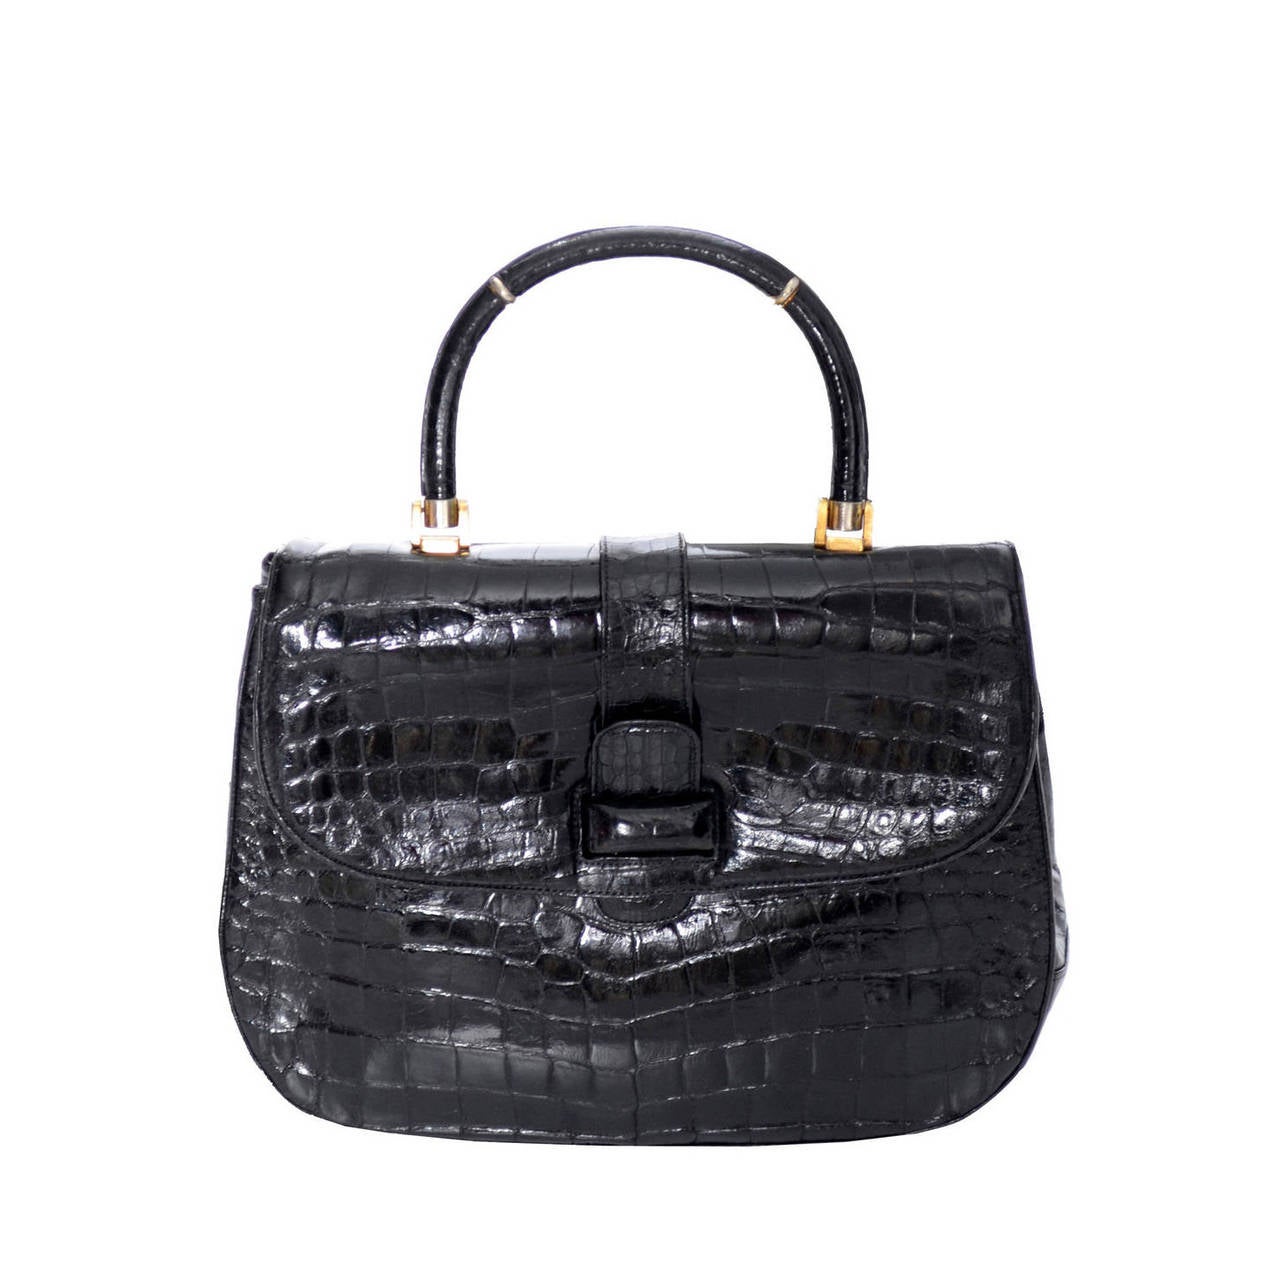 Lucille de Paris Rare Vintage Alligator Handbag Satchel 1950s Black